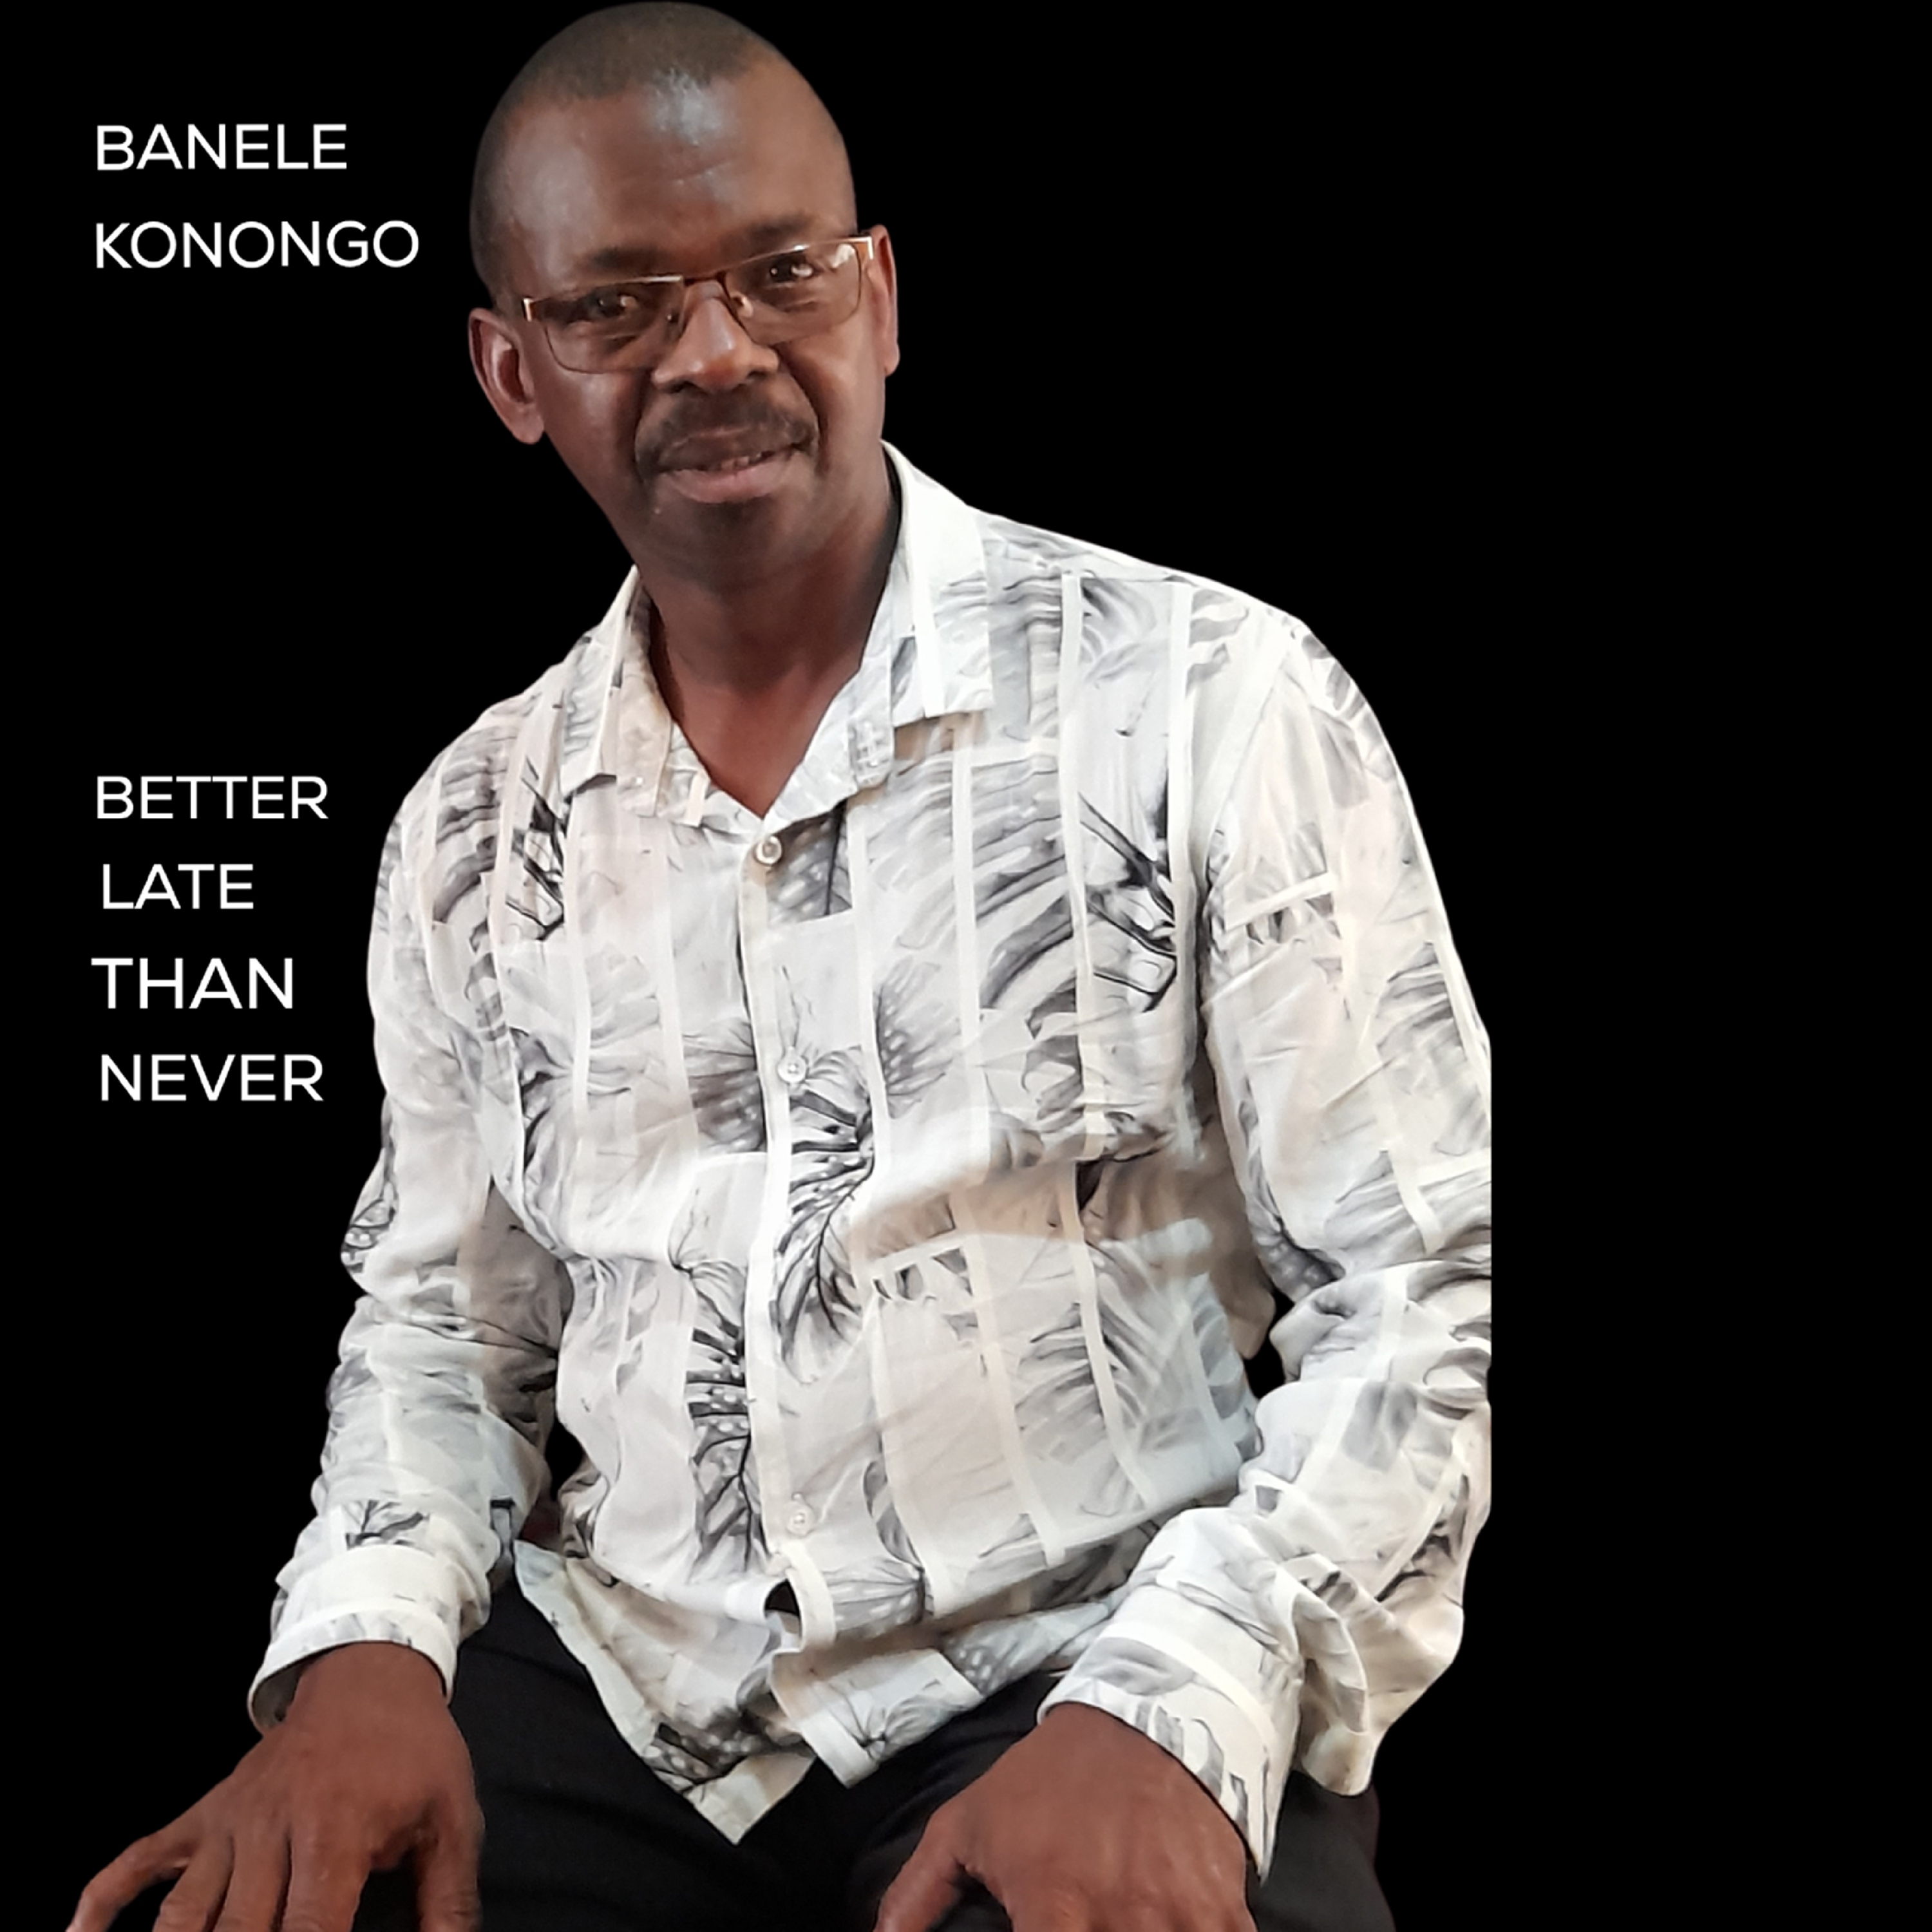 Banele Konongo - Better late than never